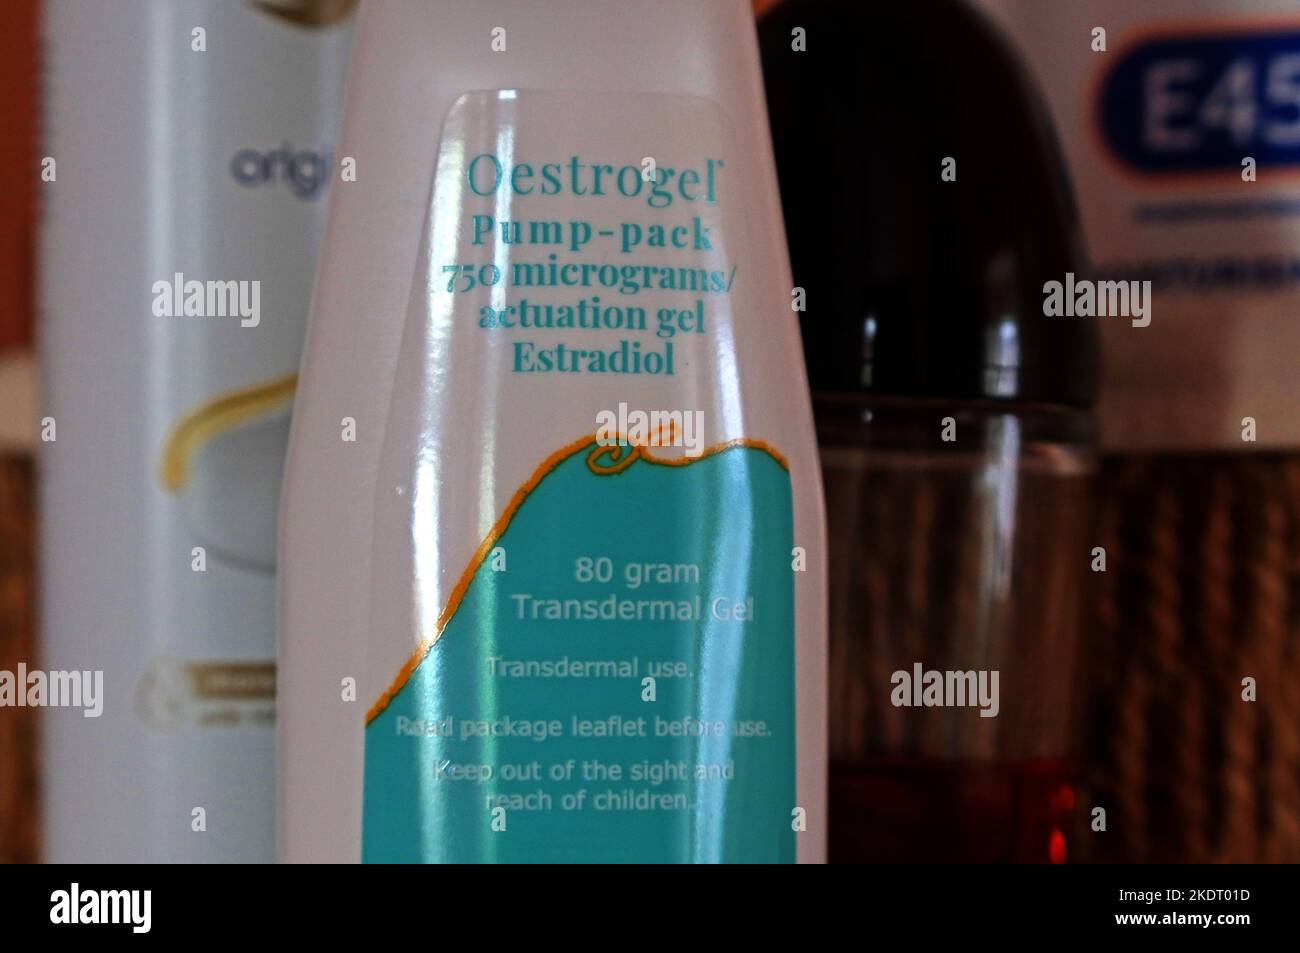 Oestrogel Pump-Pack transdermal HRT gel on a menopausal womans bedside table Stock Photo